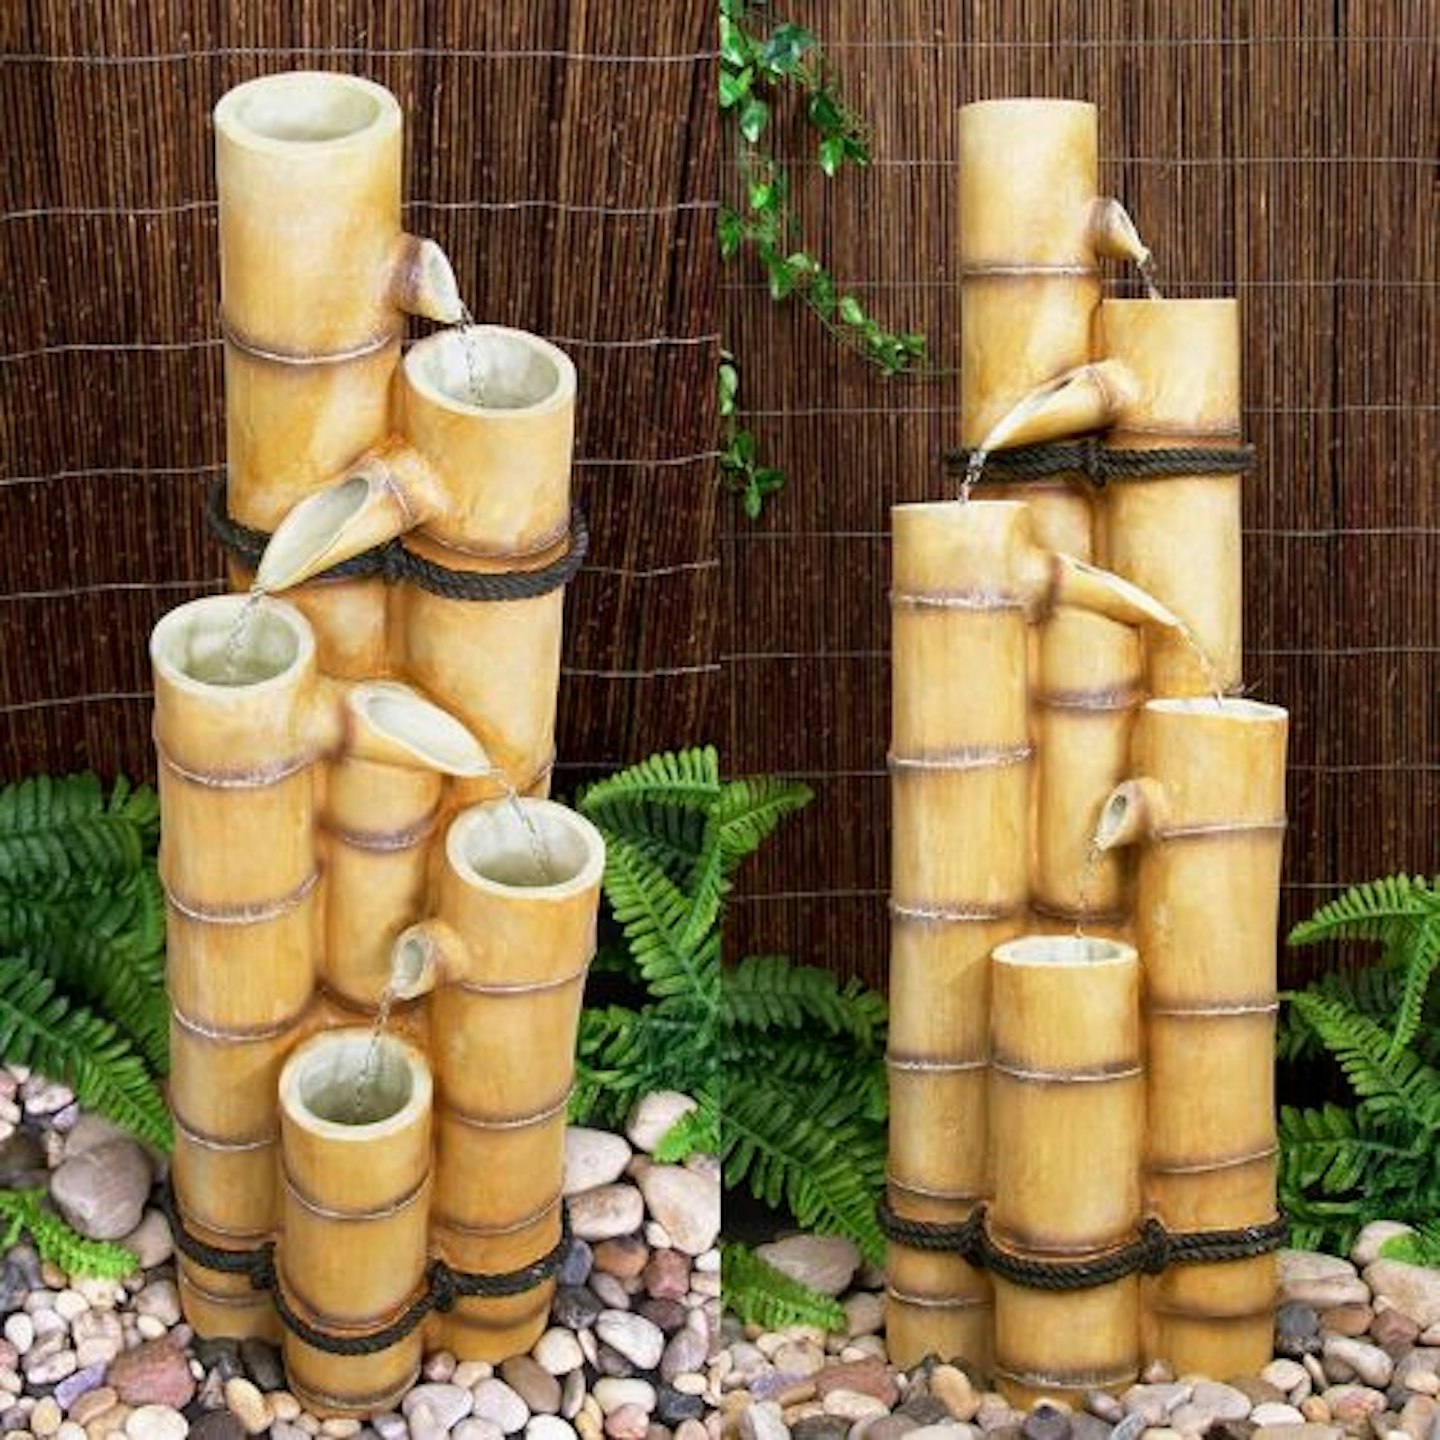 Bamboo-Effect Cascade Water Feature